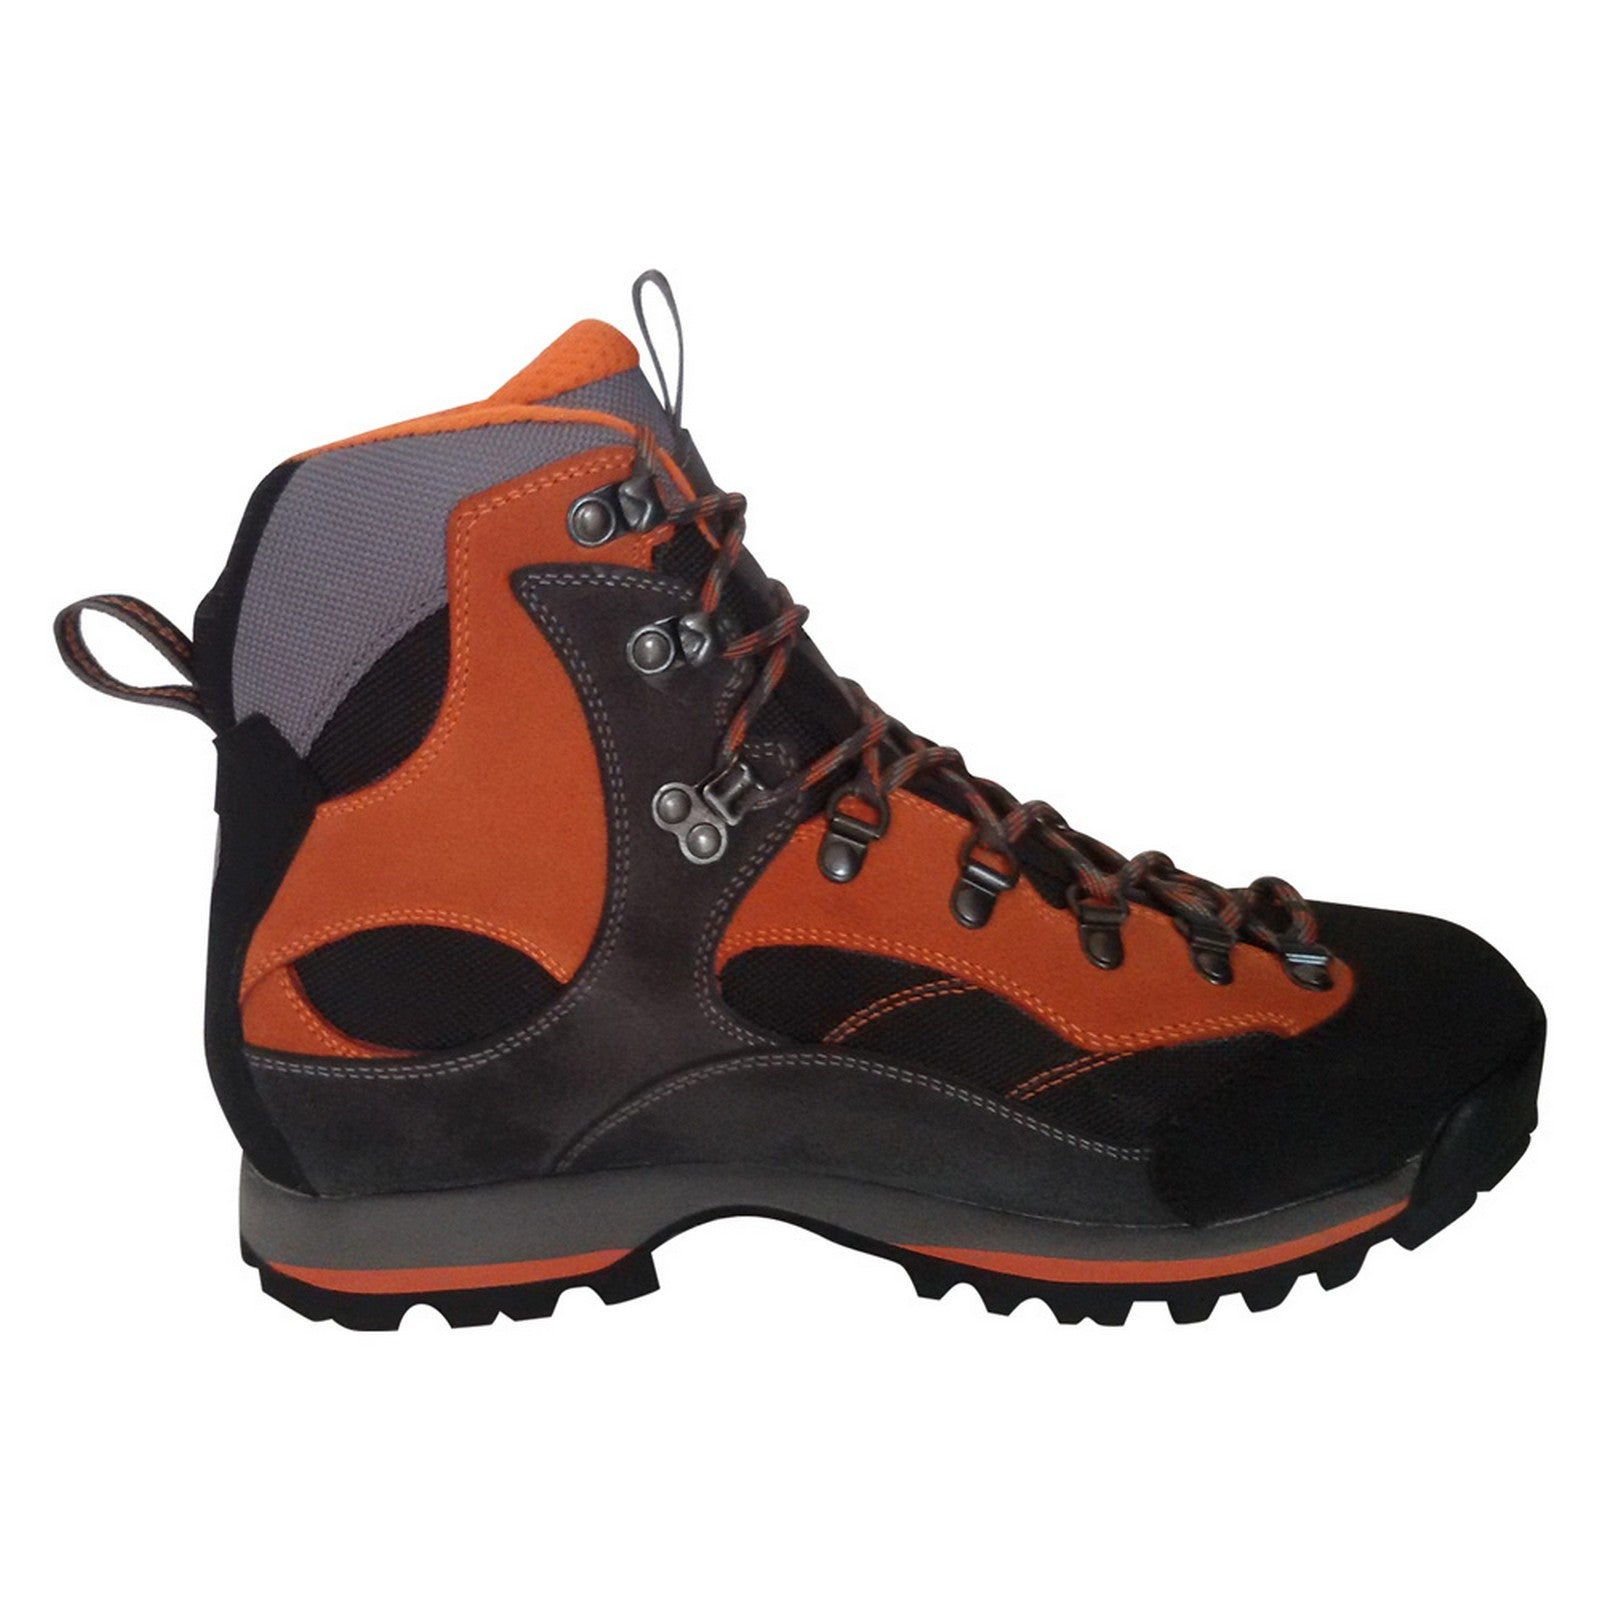 1coppia scarpe per trekking alte 'sorapiss wp' n. 44 - antracite/arancio cod:ferx.1061244nlm